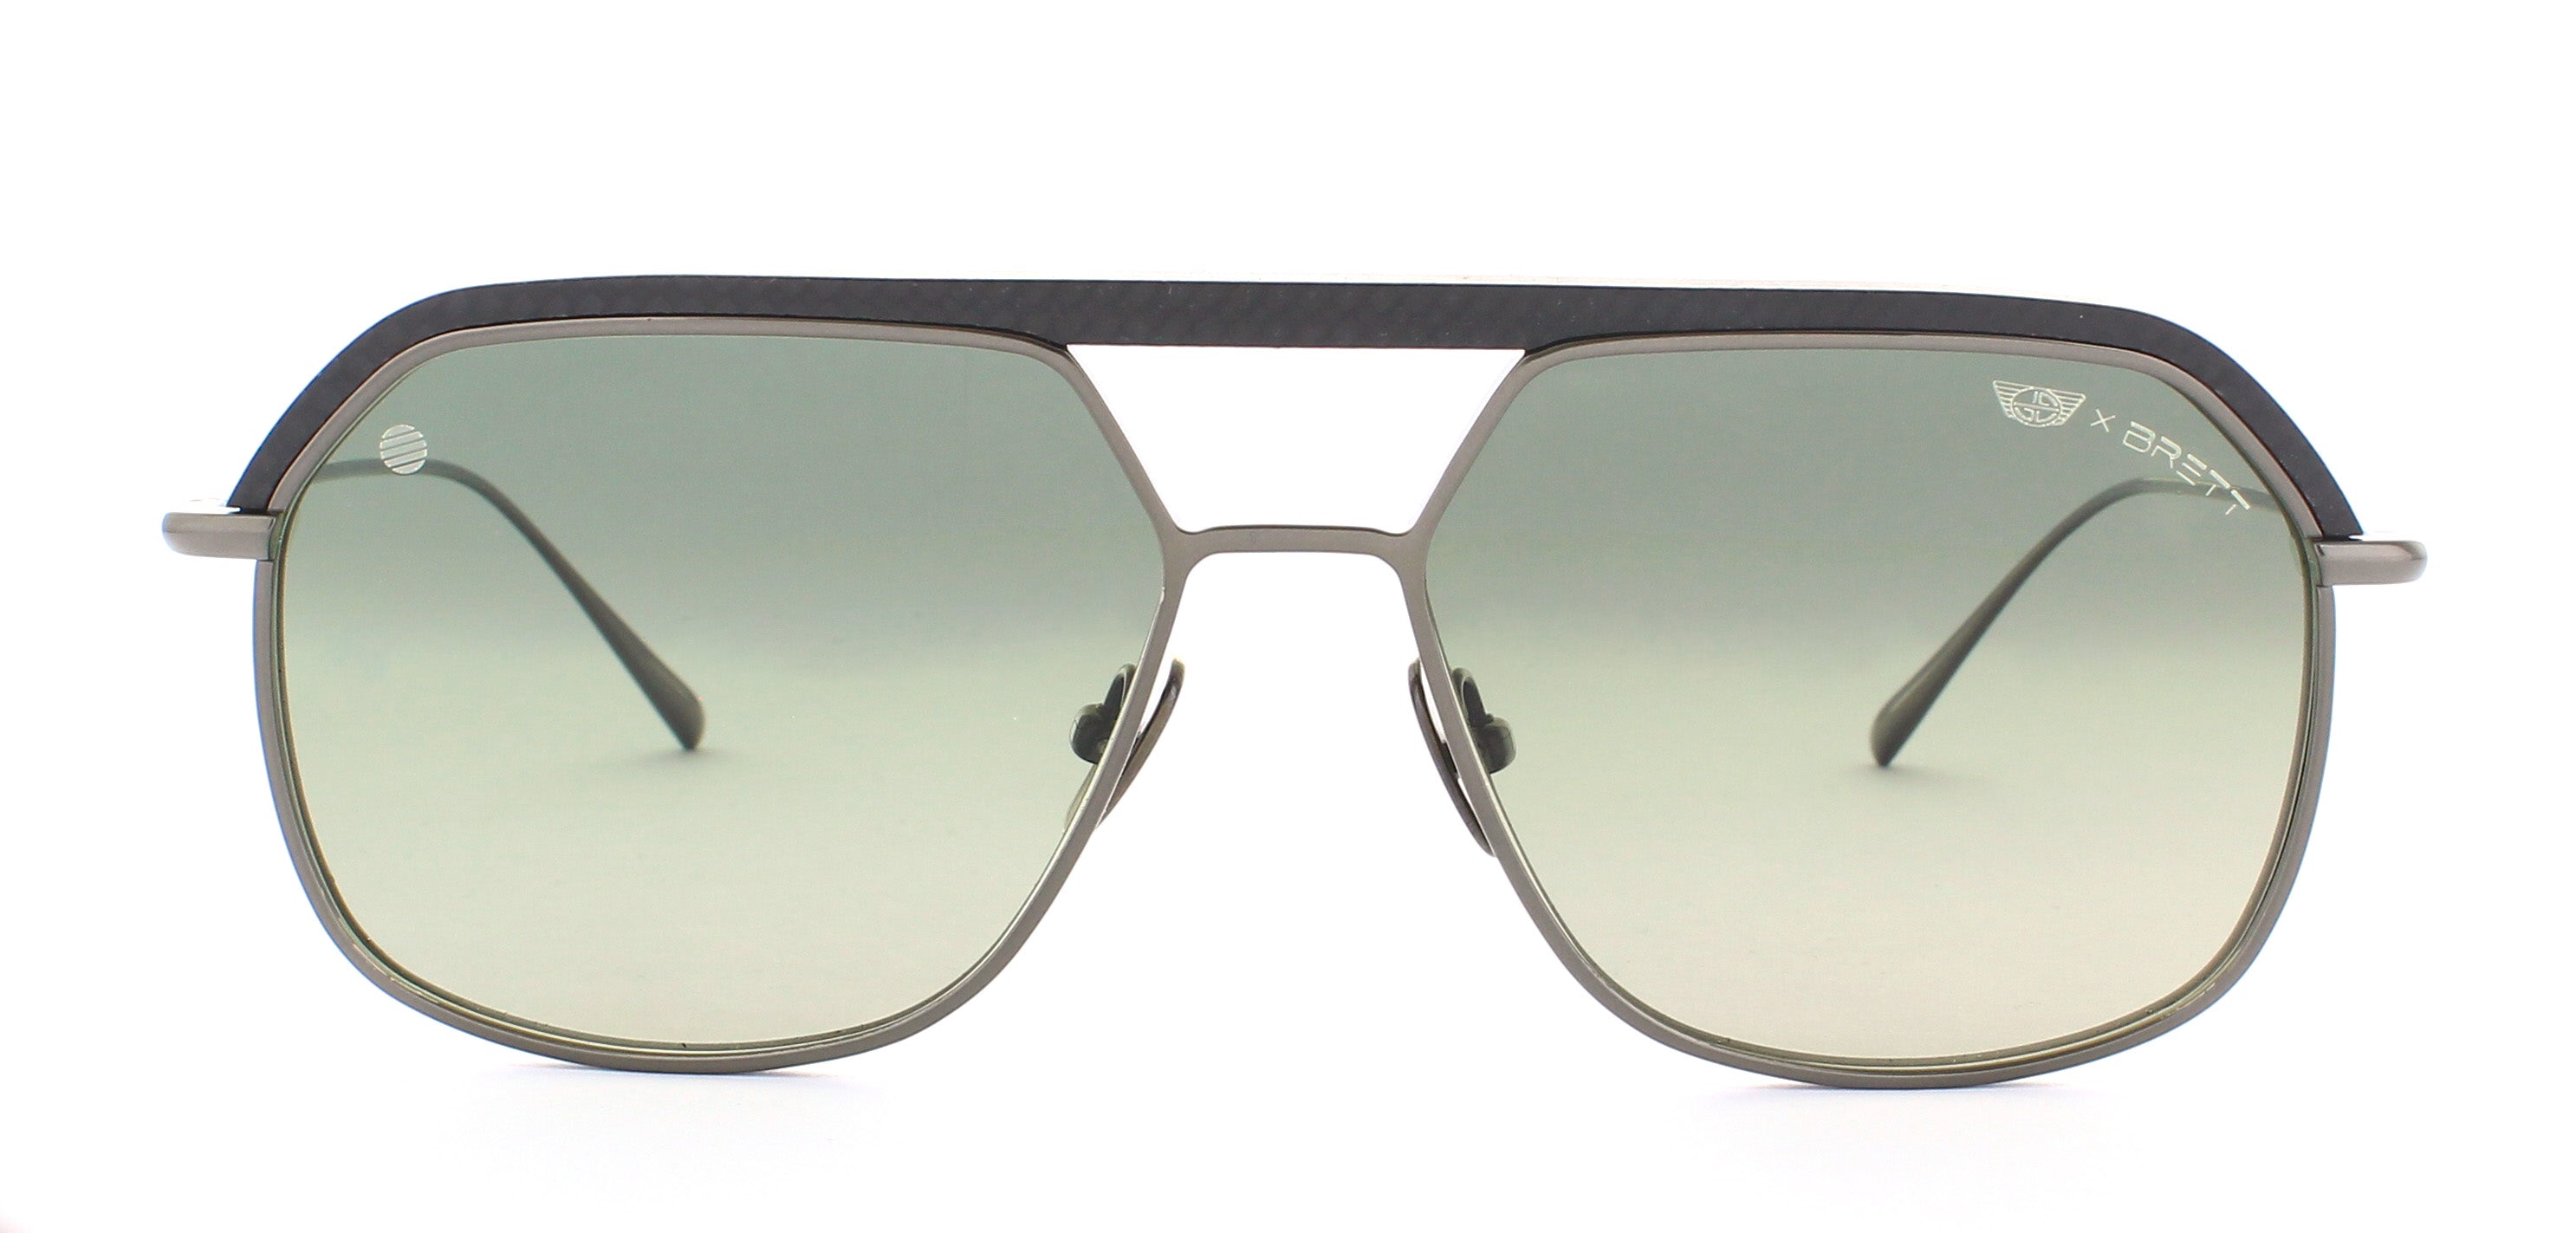 Sunglasses S8 - Shiny Gun / Matt Black